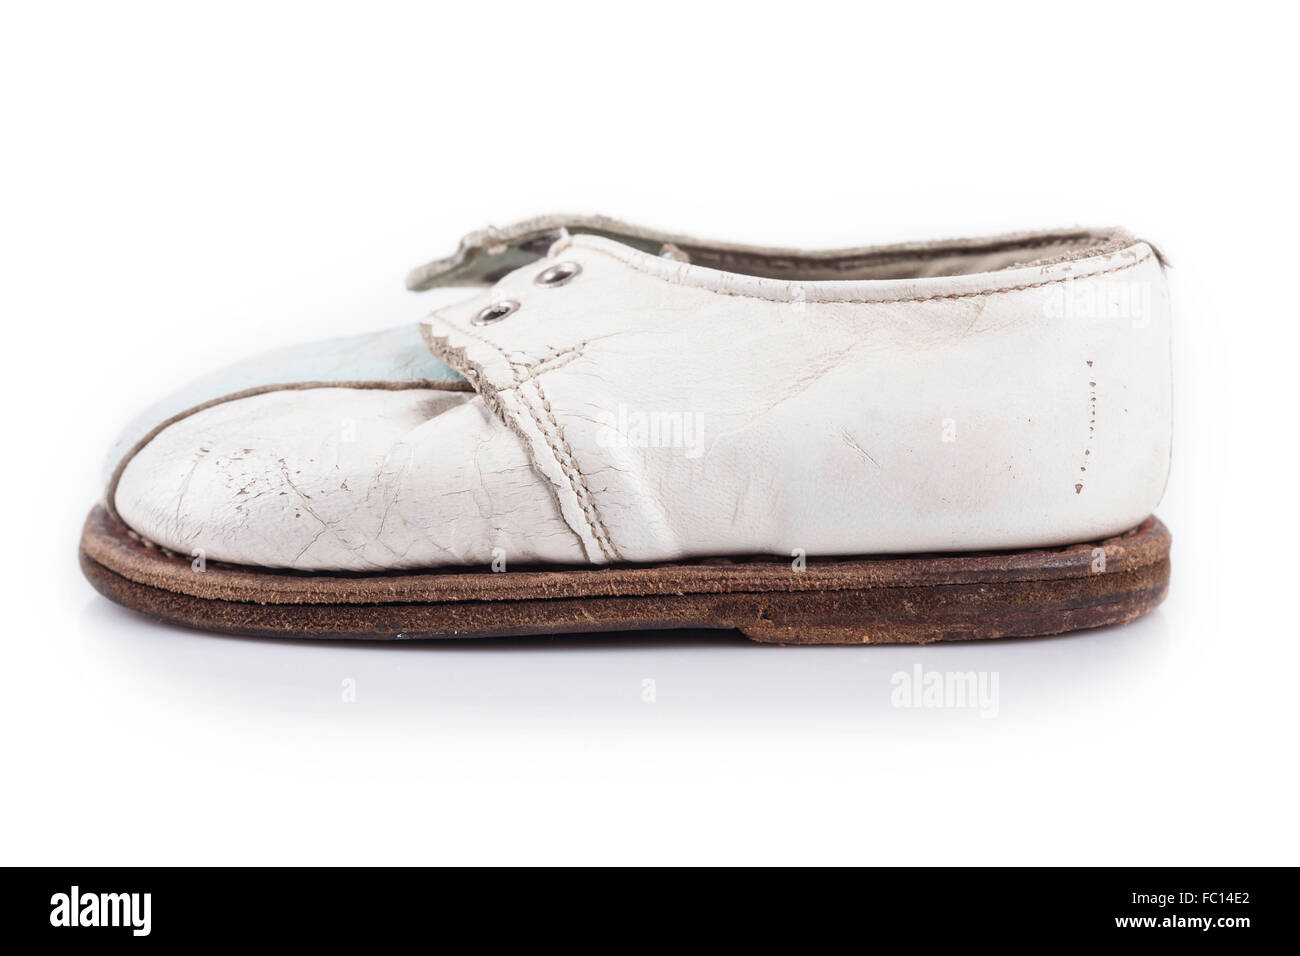 Bambini scarpa vecchia isolata su uno sfondo bianco Foto Stock